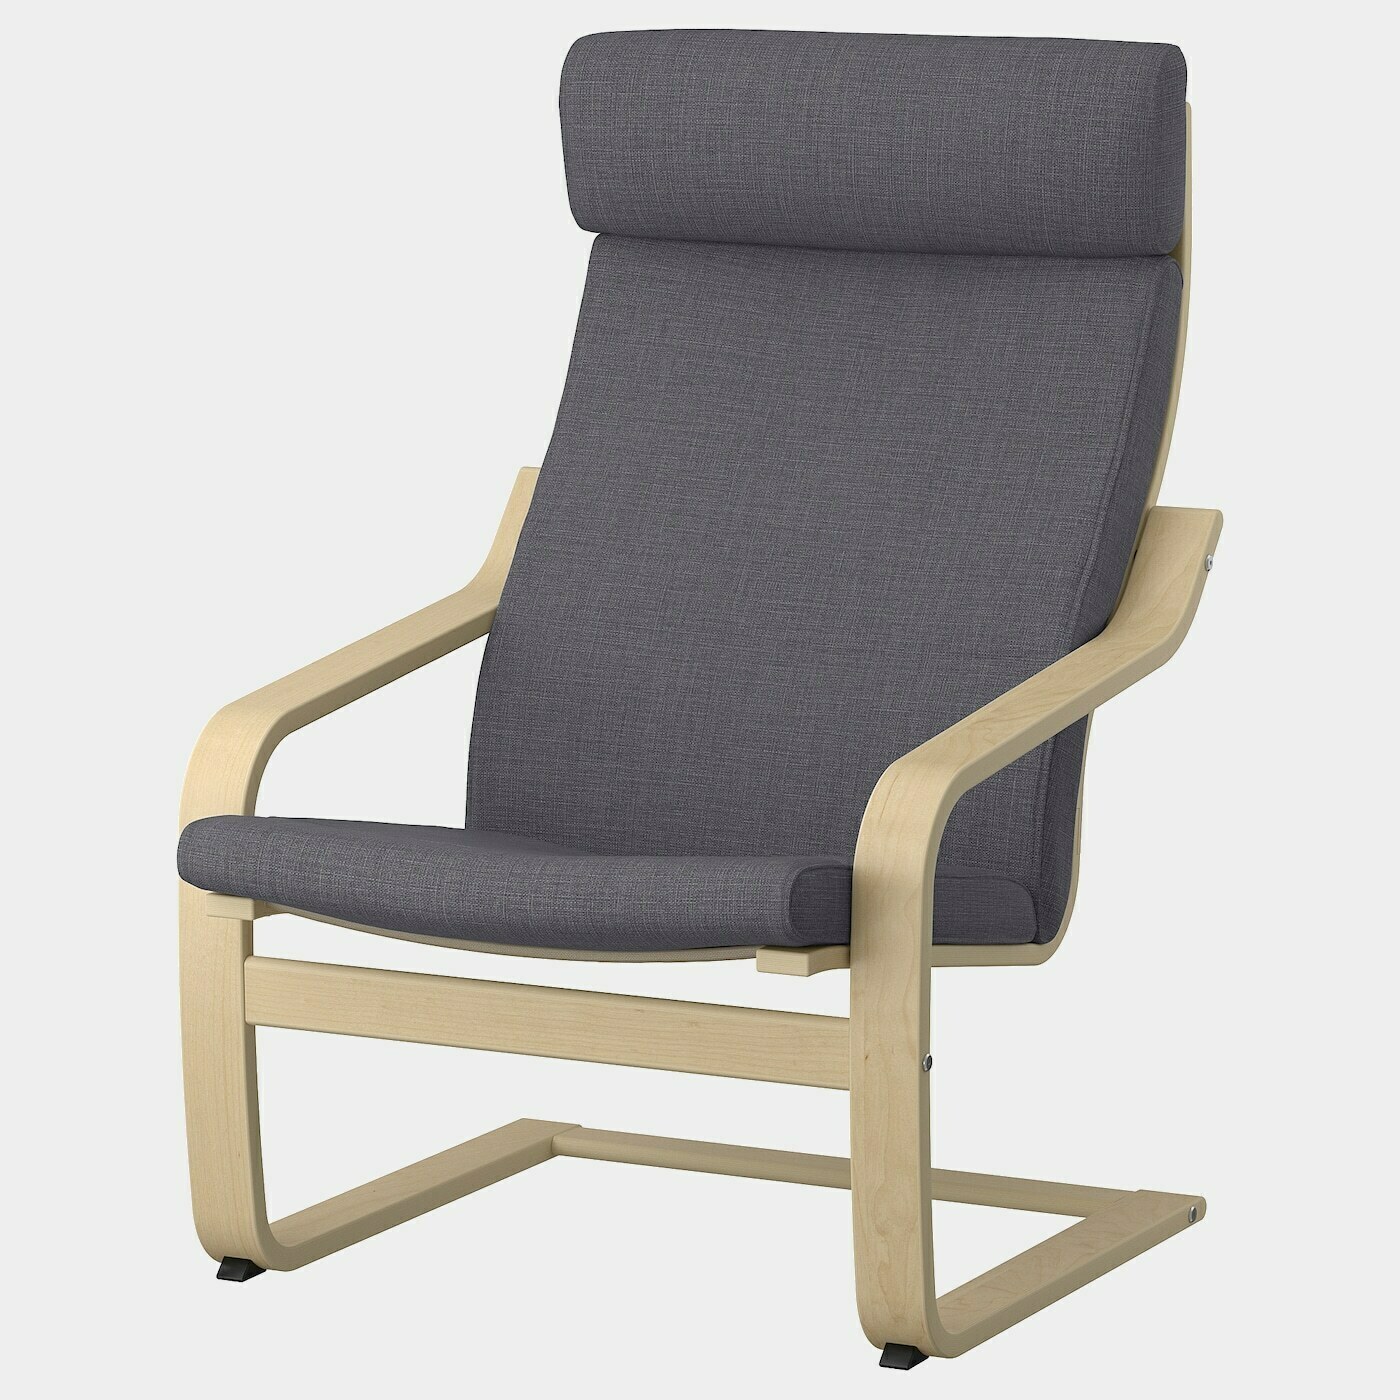 POÄNG Sessel  -  - Möbel Ideen für dein Zuhause von Home Trends. Möbel Trends von Social Media Influencer für dein Skandi Zuhause.